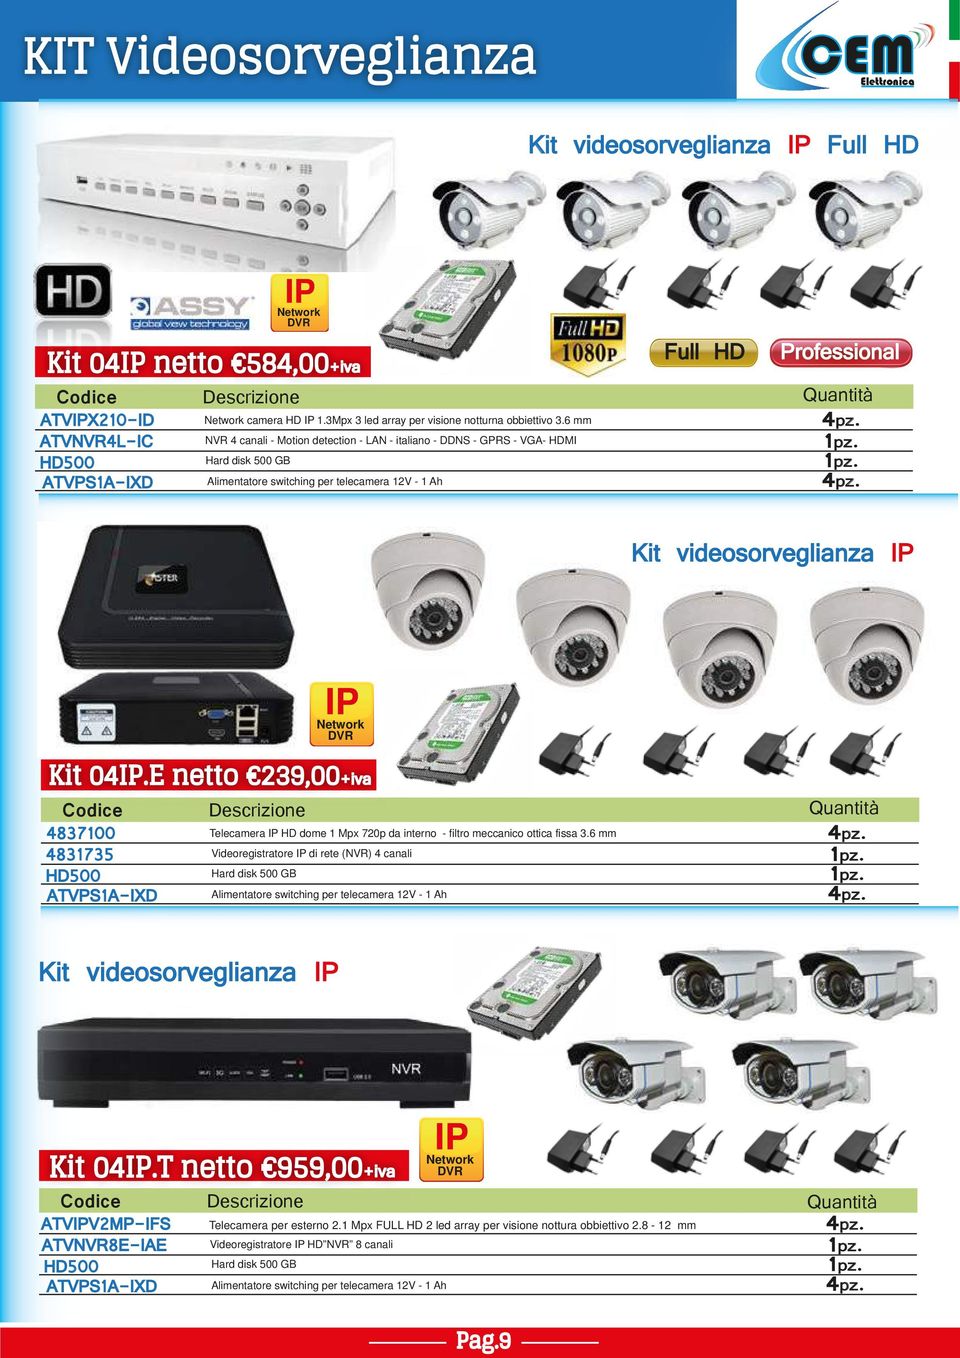 6 mm Alimentatore switching per telecamera 12V - 1 Ah Full HD Quantità Kit videosorveglianza IP IP Network DVR Kit 04IP.